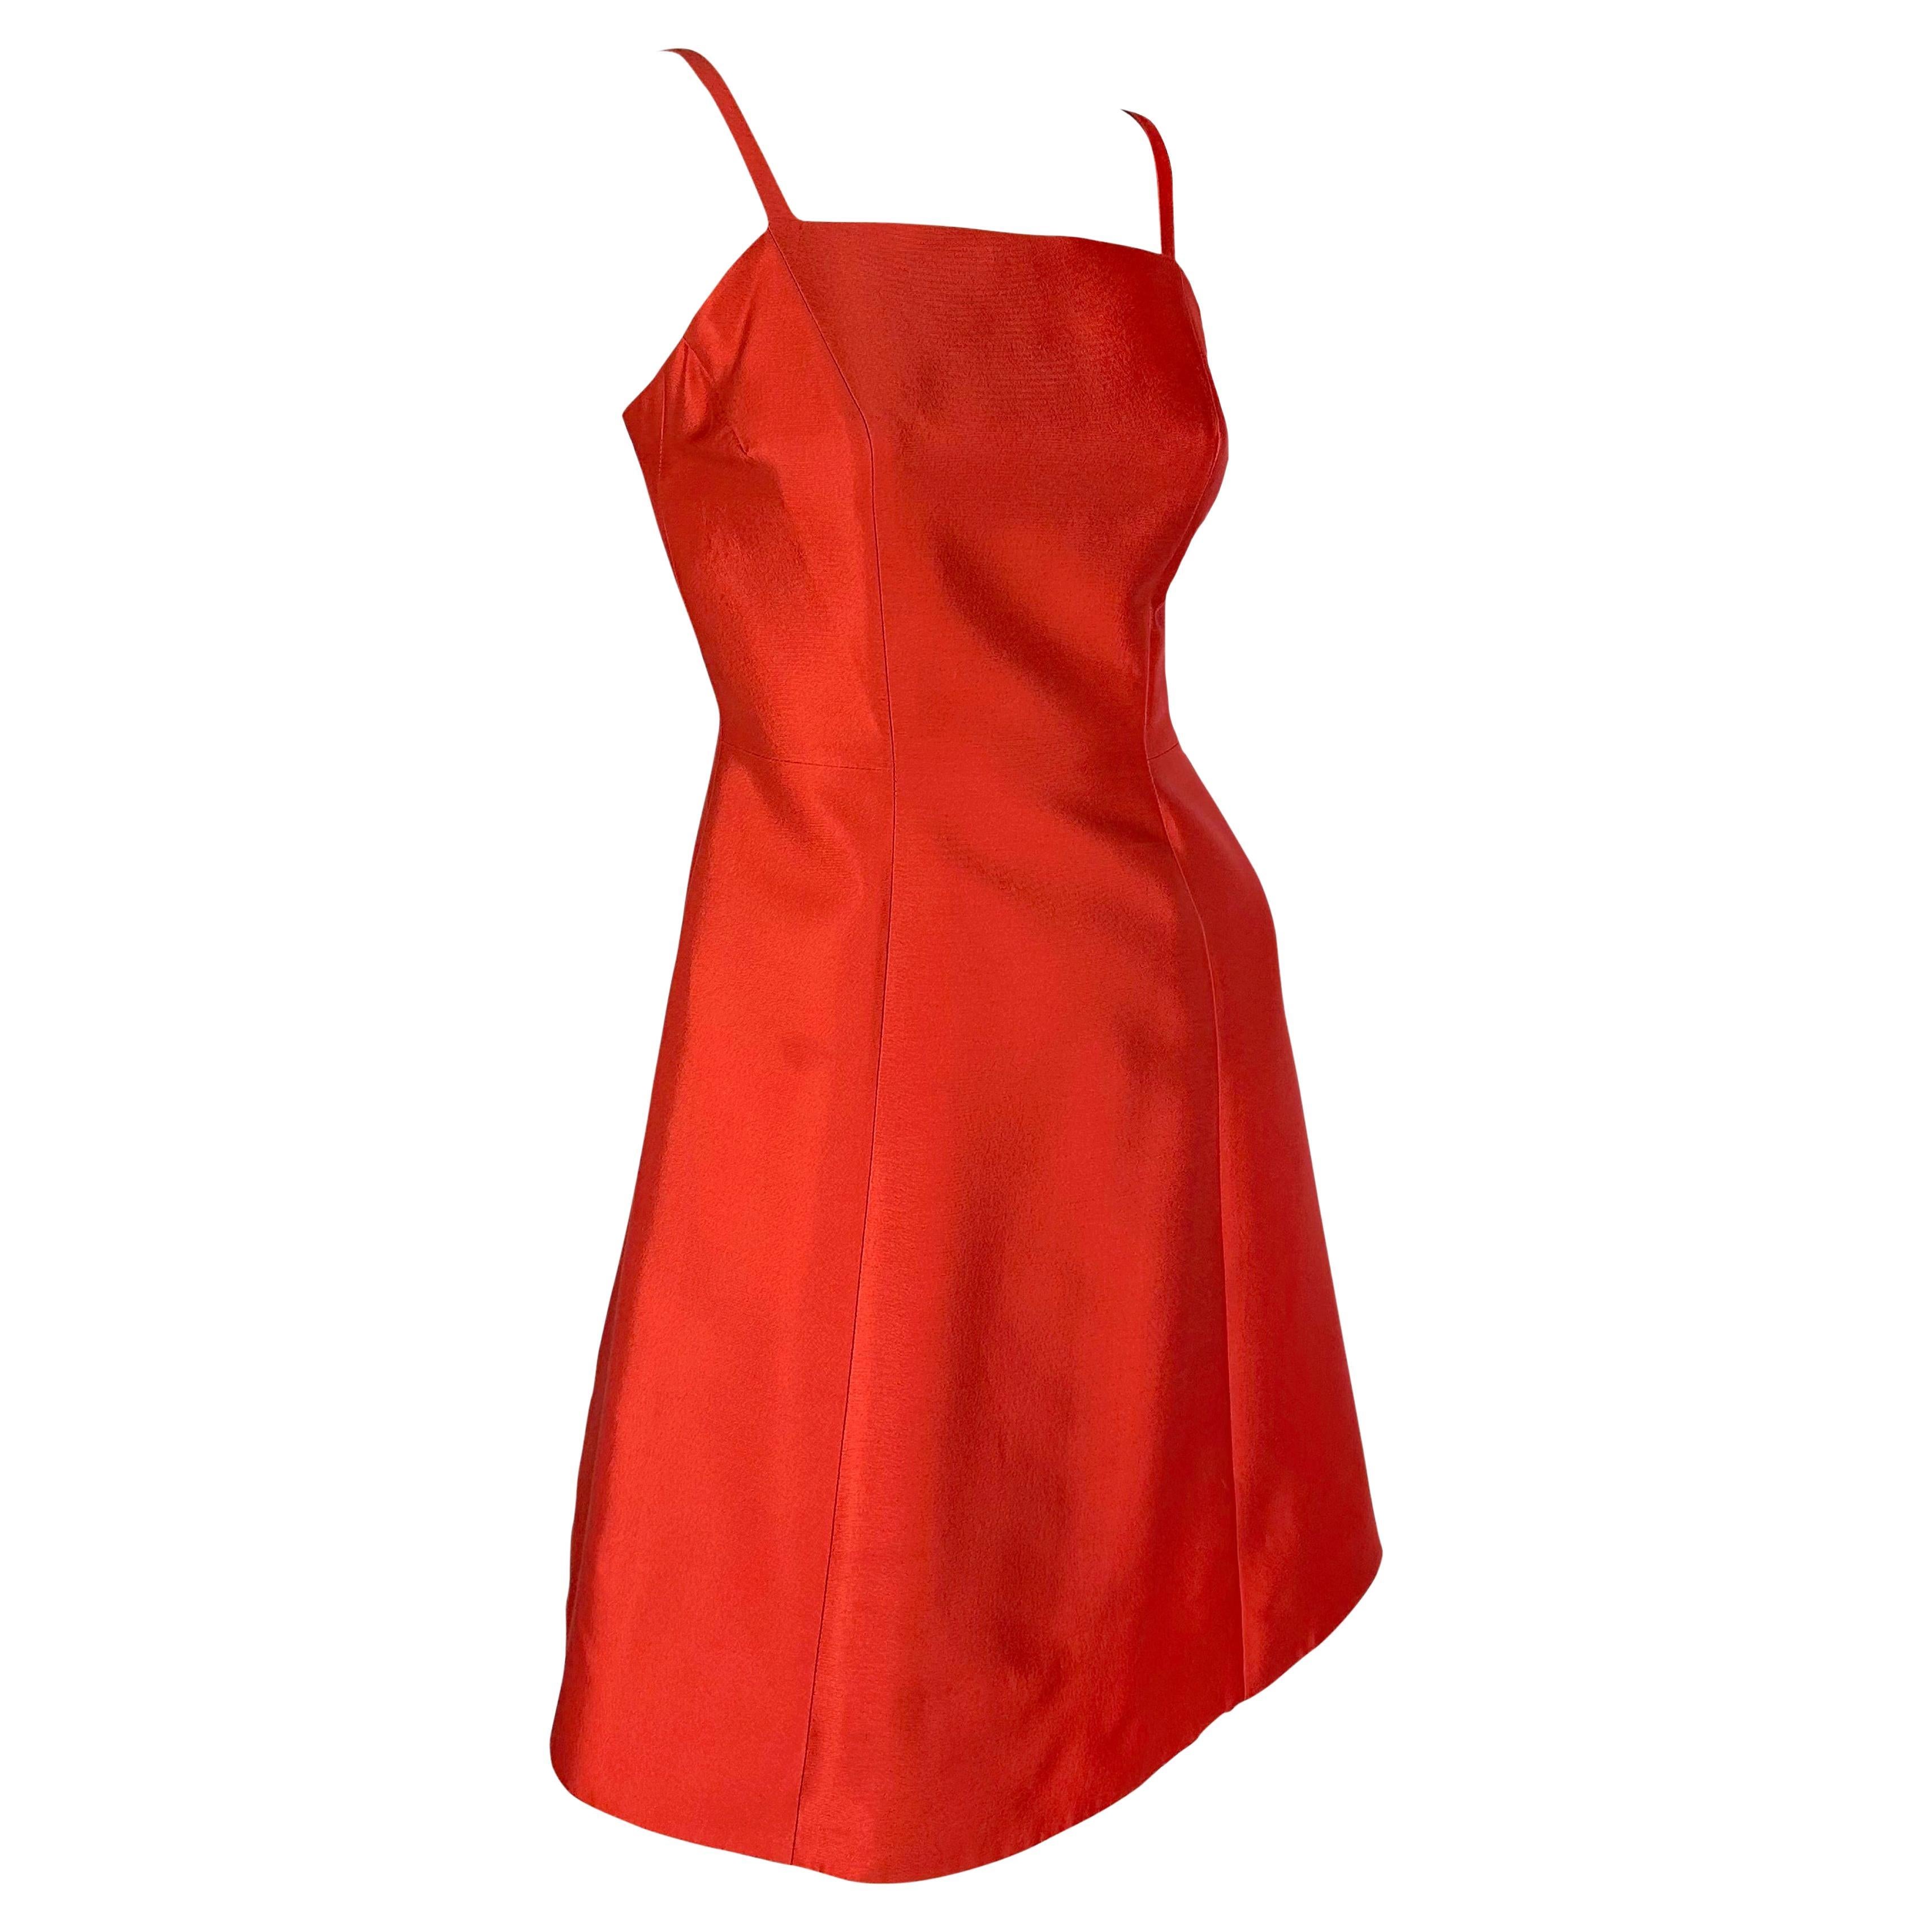 F/W 1995 Prada Kate Moss Runway Red Silk Wool Taffeta Flare Cocktail Dress 3